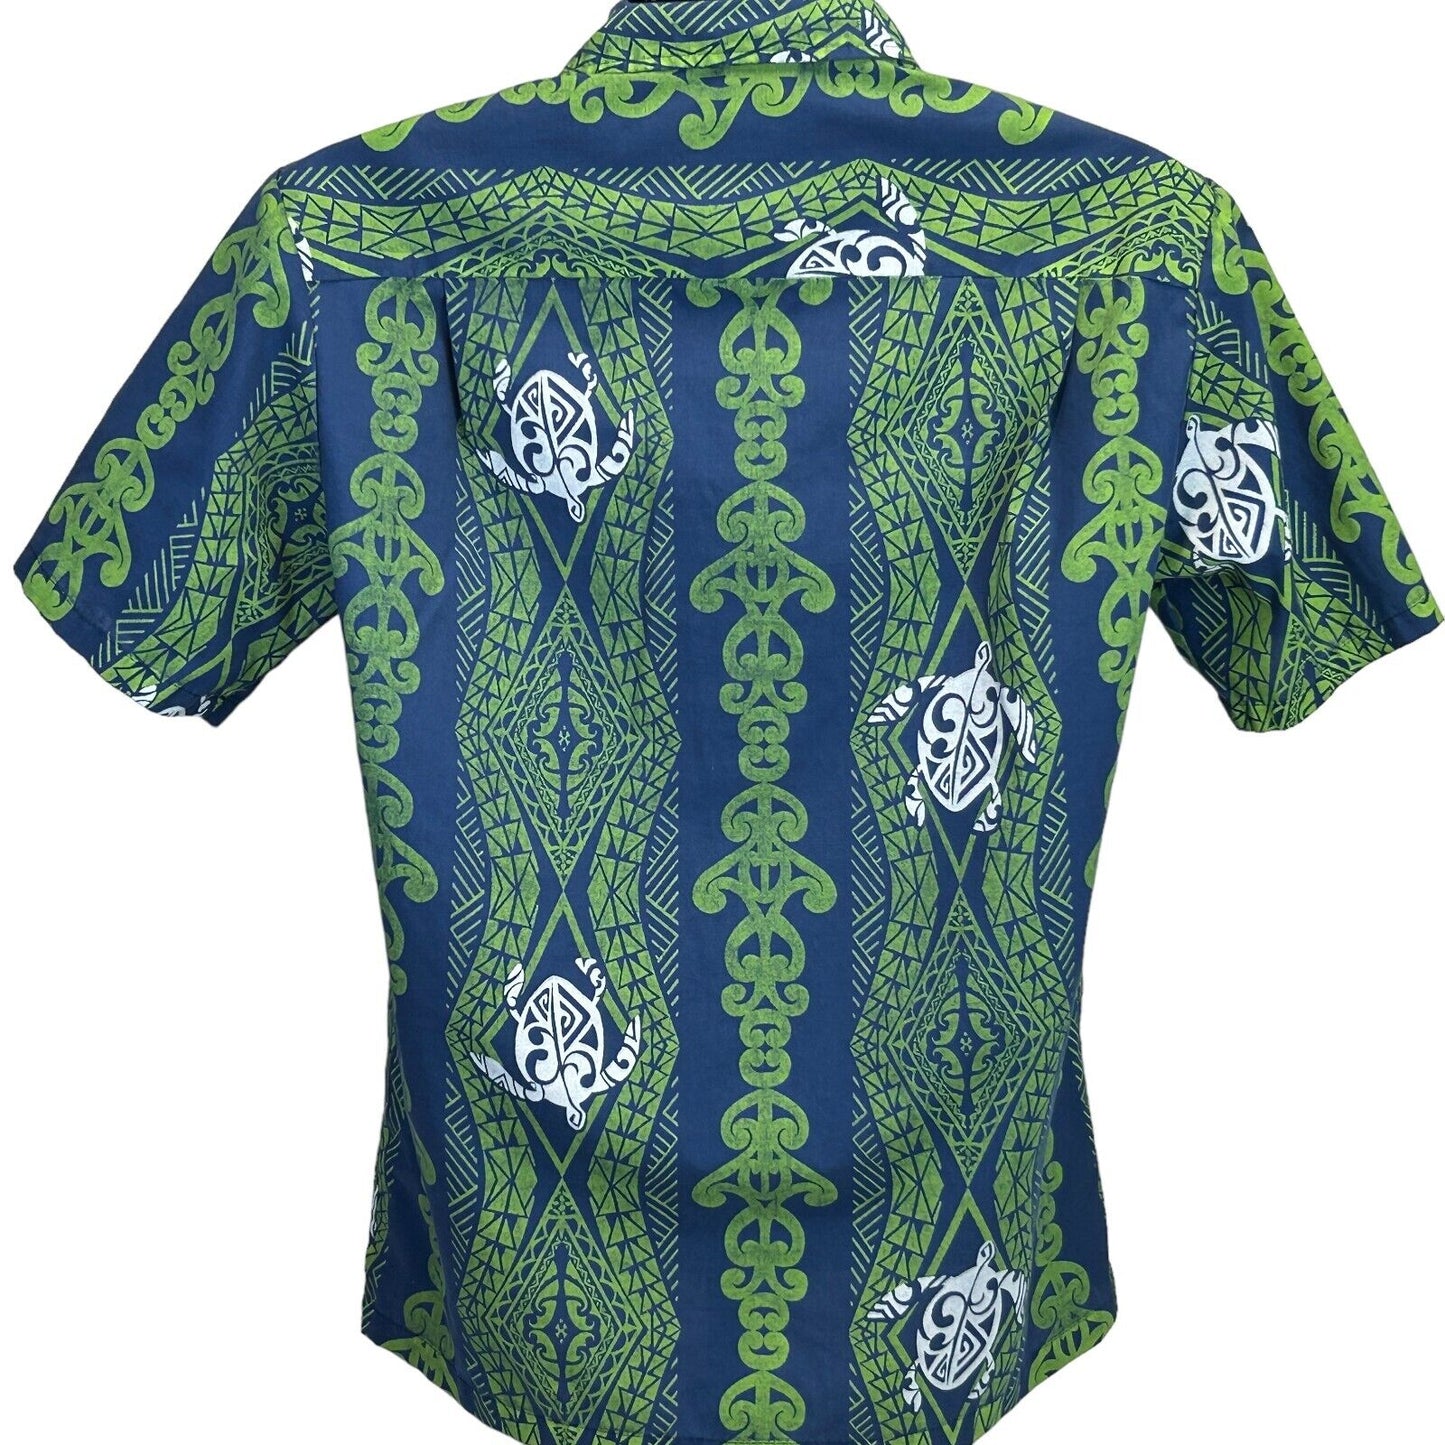 Royal Creations Vintage 90s Hawaiian Camp Shirt Sea Turtles Made In USA Small